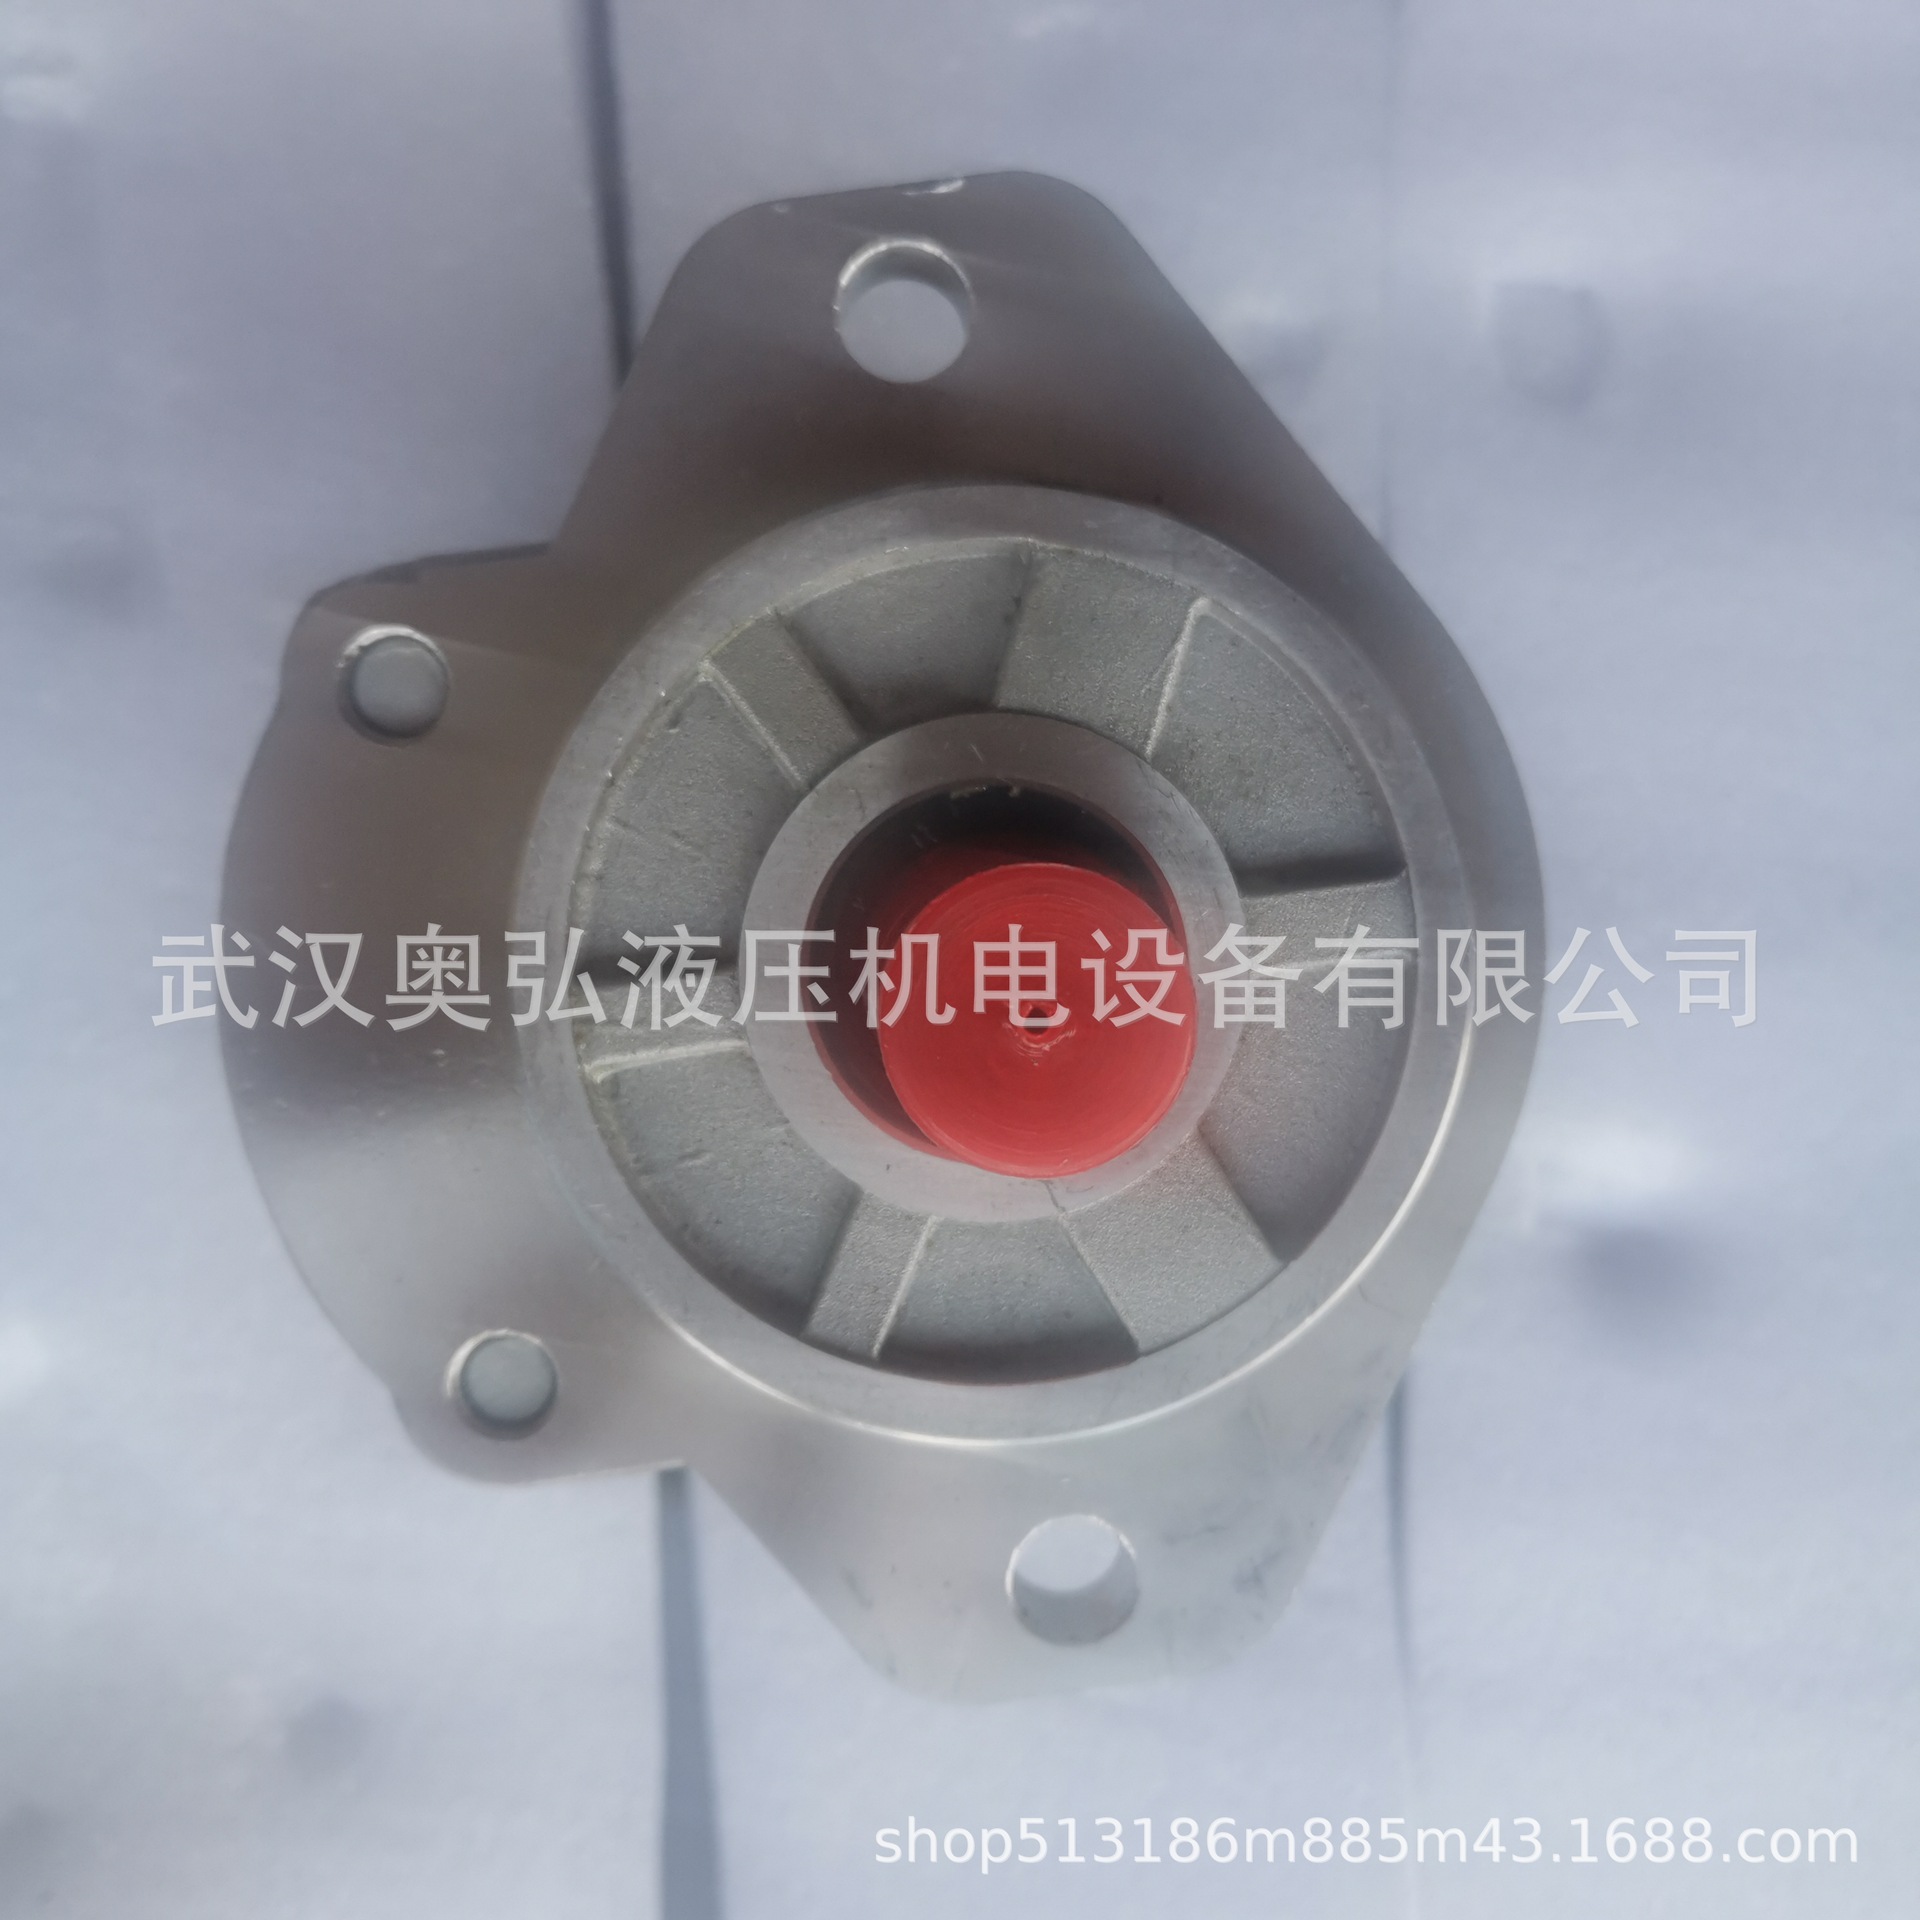 CBK1032-BIFR四川长江高压齿轮泵 吊车煤机设备液压泵维修柱塞泵